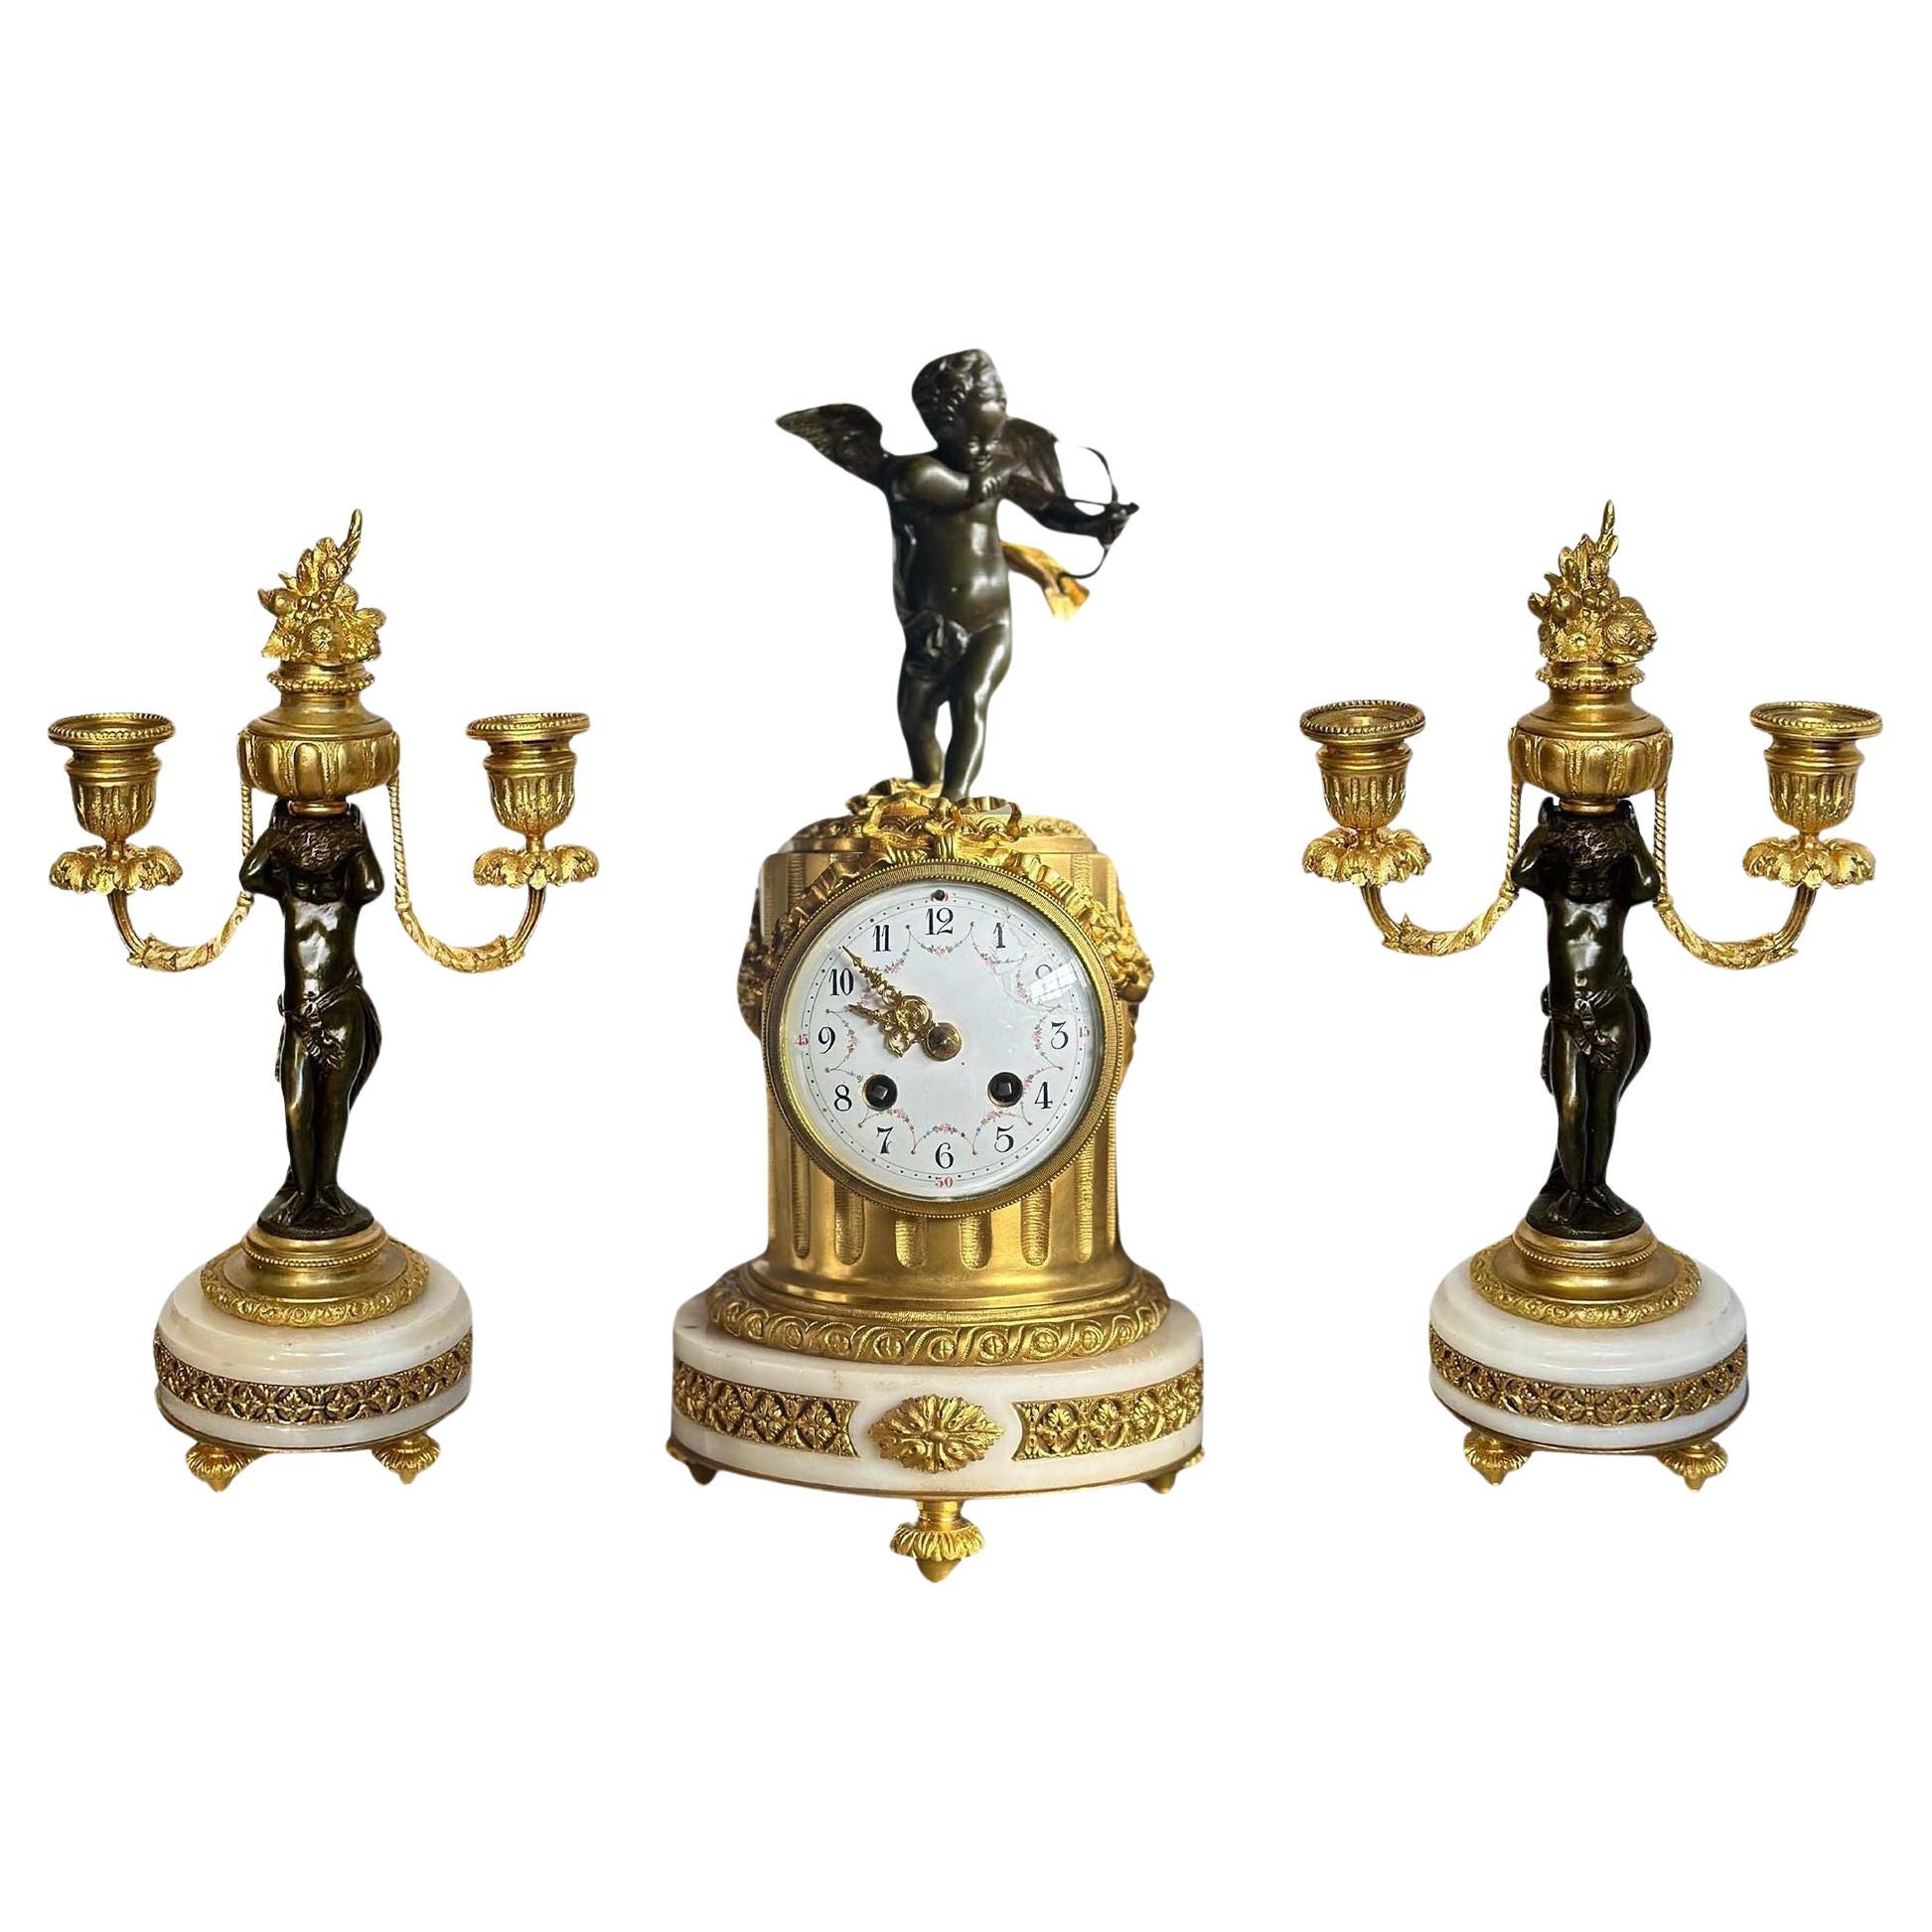 Französische Uhr und Kandelaber Cherub-Set aus dem 19. Jahrhundert